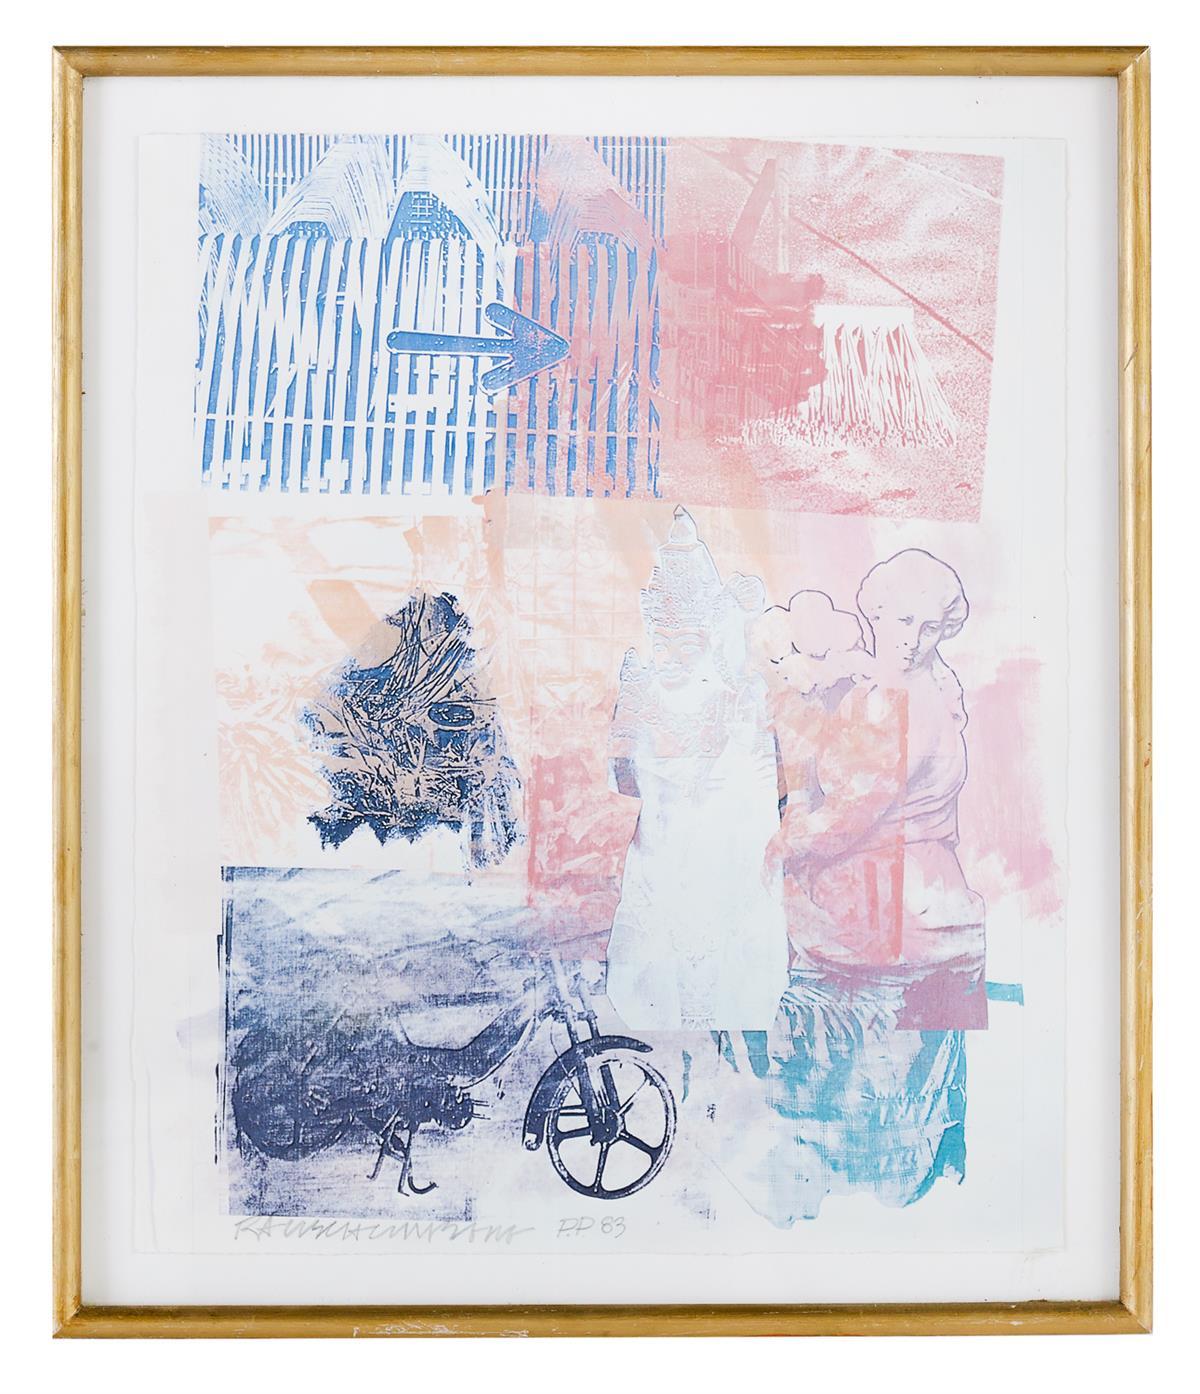 (After) Robert Rauschenberg Abstract Print - "Arrow" (Signed, Dated by Rauschenberg) Framed Modern 20th Century Pop Art Print